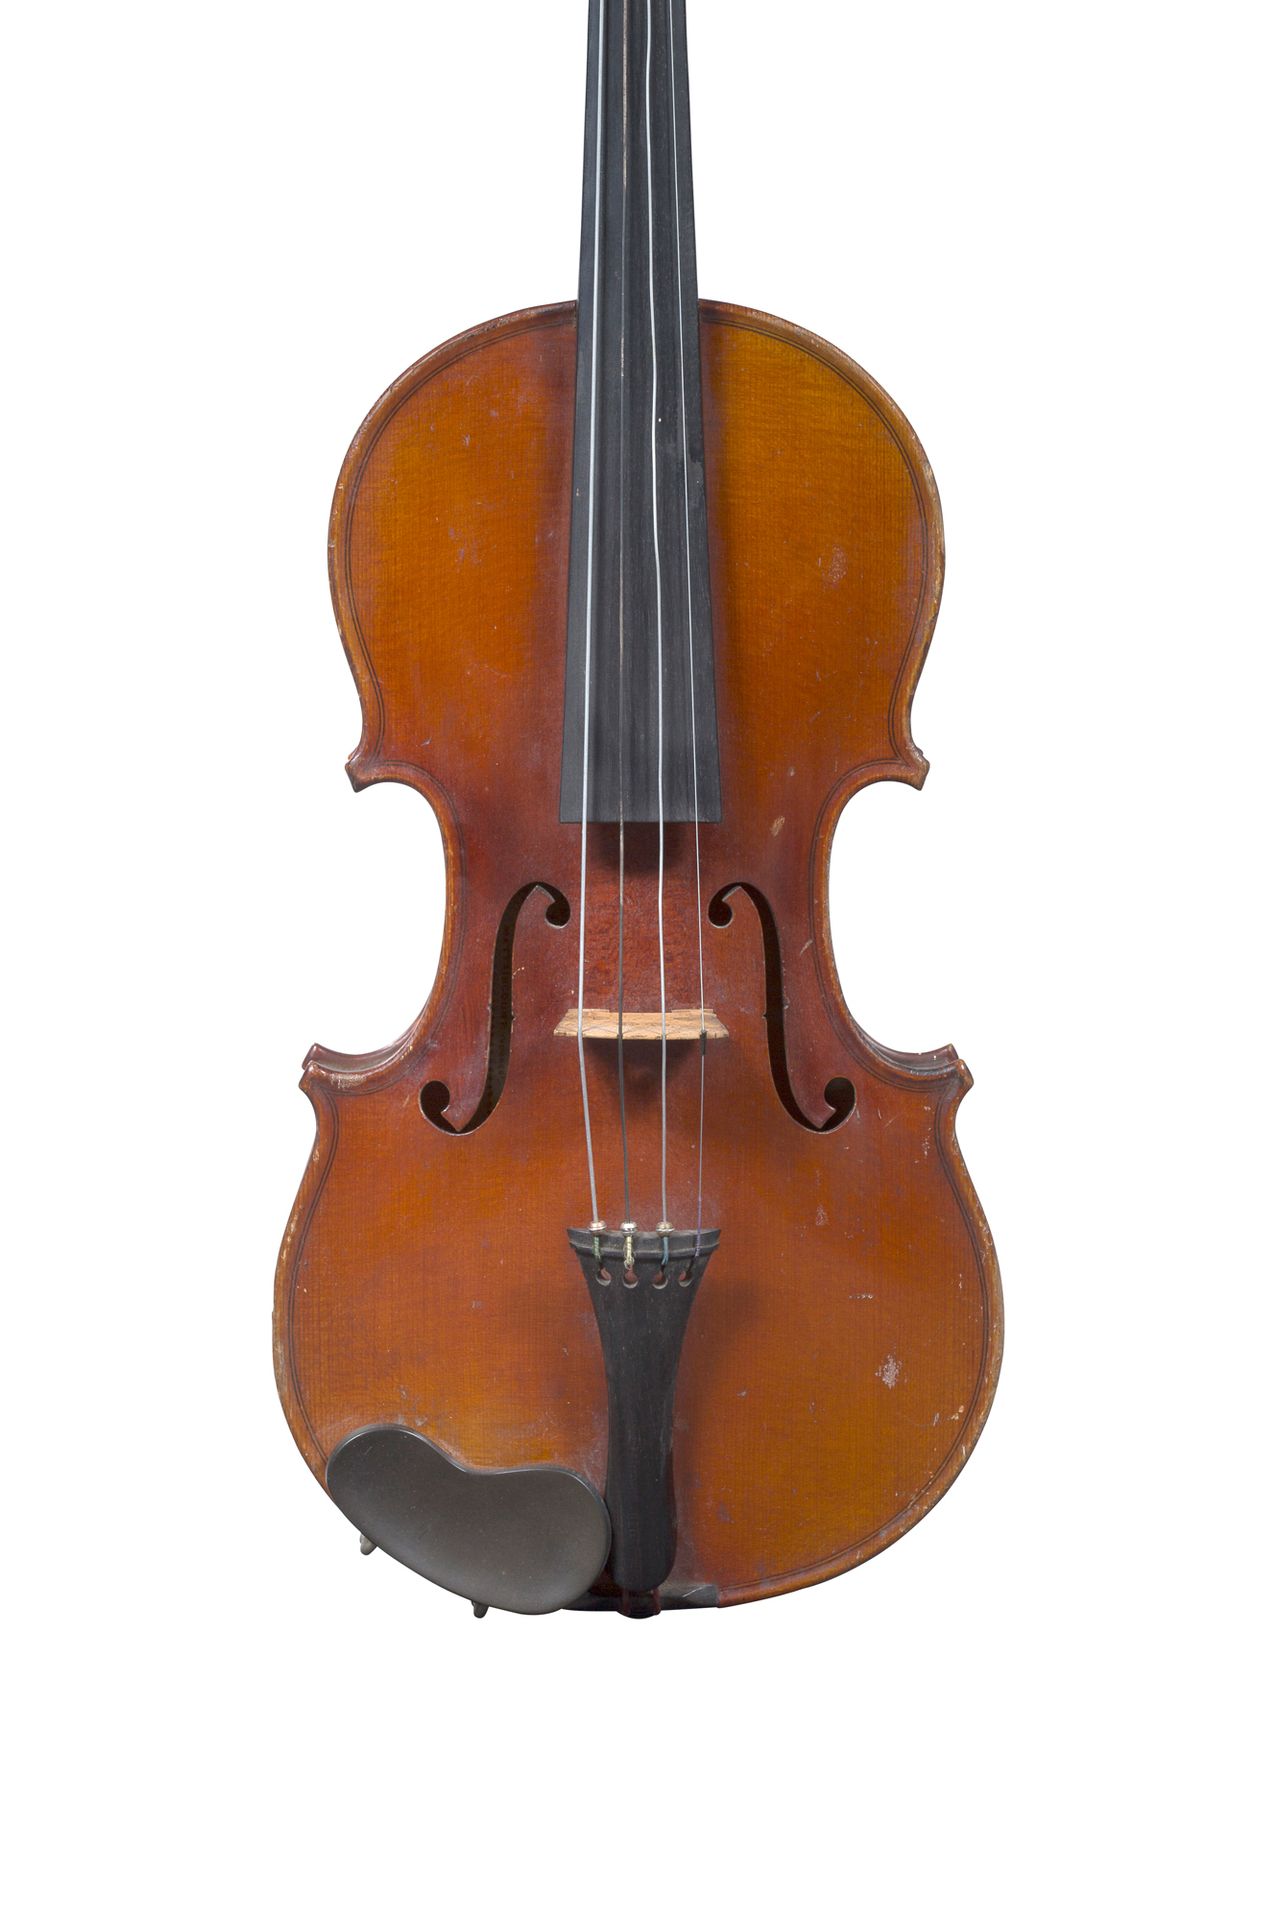 Null Violino misura 1/2 di Paul Didier
Realizzato a Mattaincourt nel 1934
Con l'&hellip;